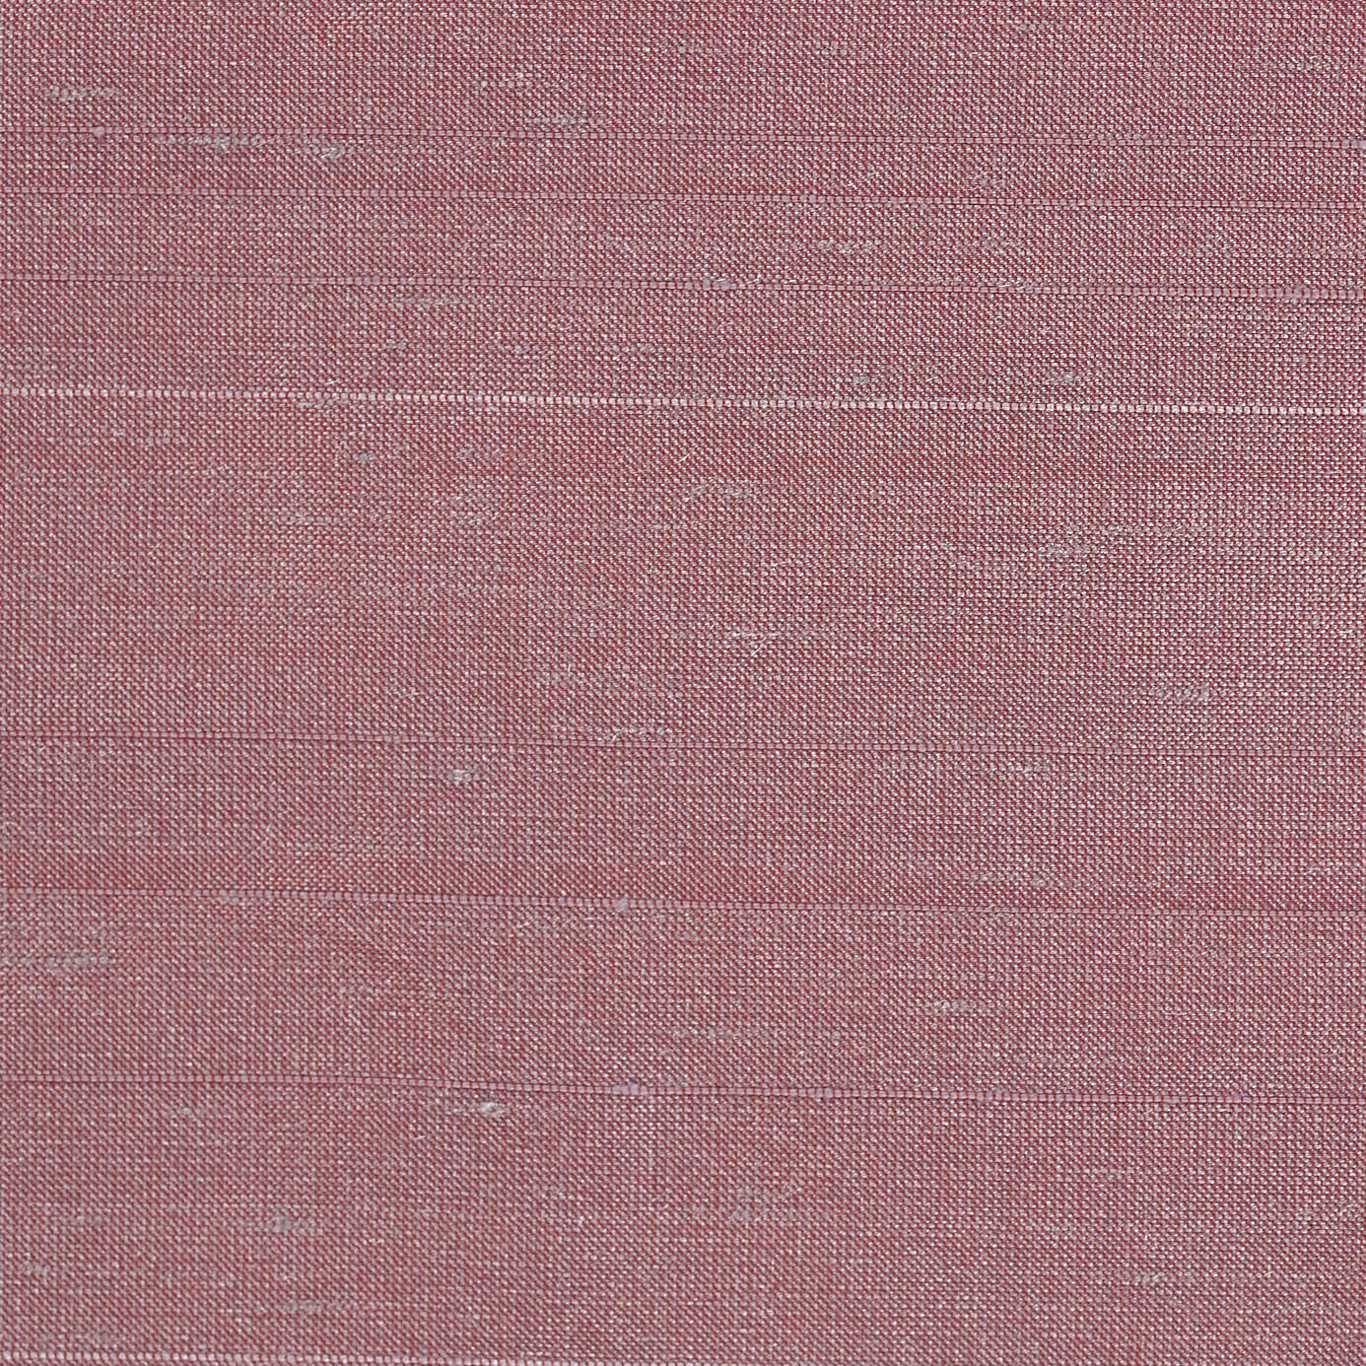 Deflect Foxglove Fabric by HAR